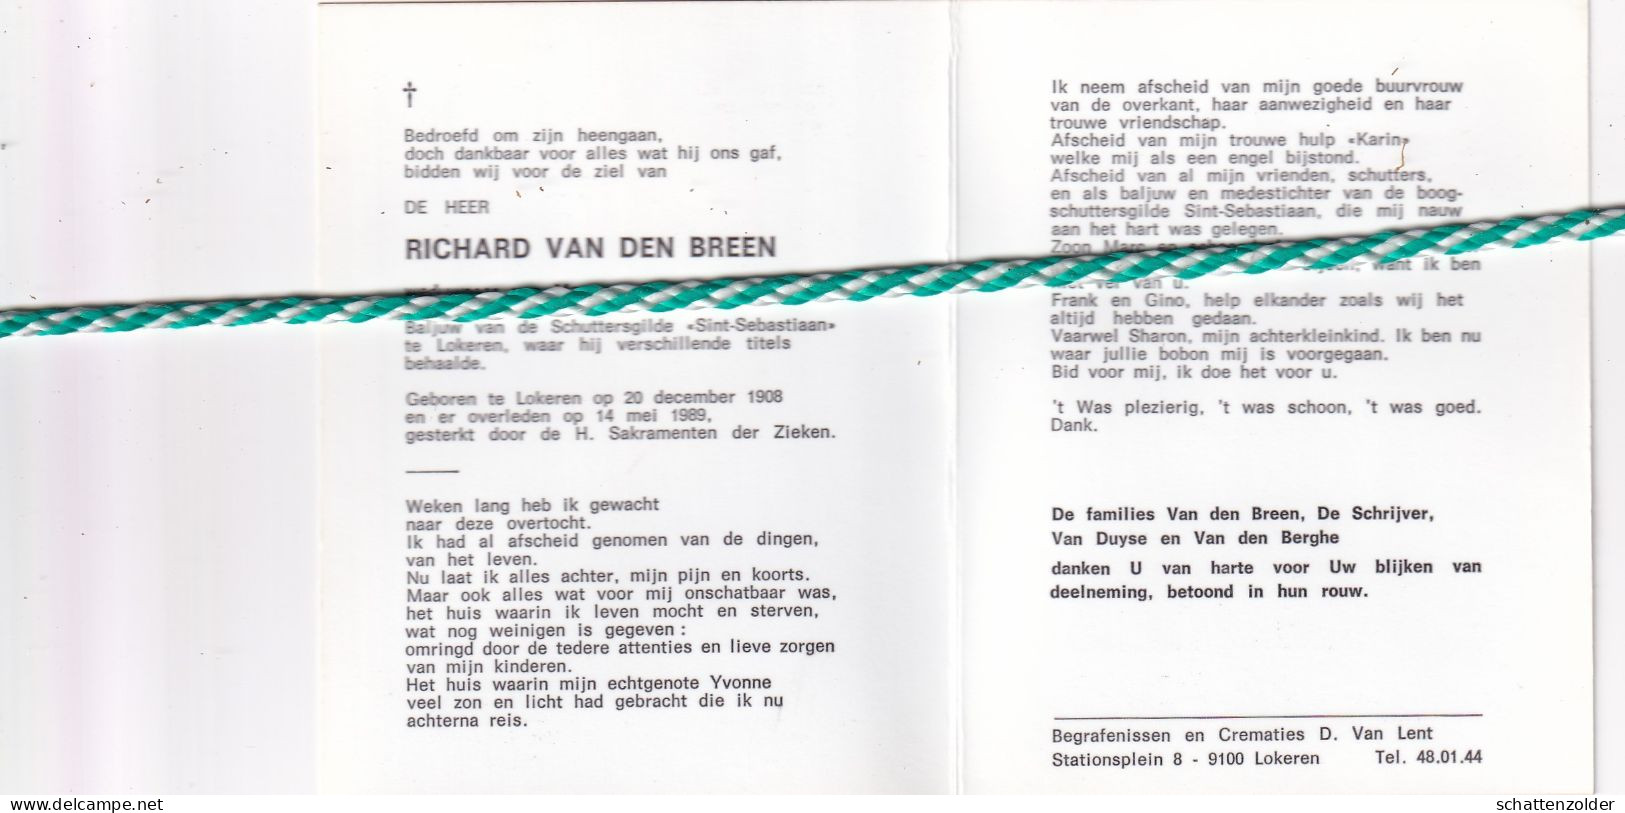 Richard Van Den Breen-De Schrijver, Lokeren 1908, 1989. Foto Baljuw Schuttersgilde "Sint-Sebastiaan" - Todesanzeige